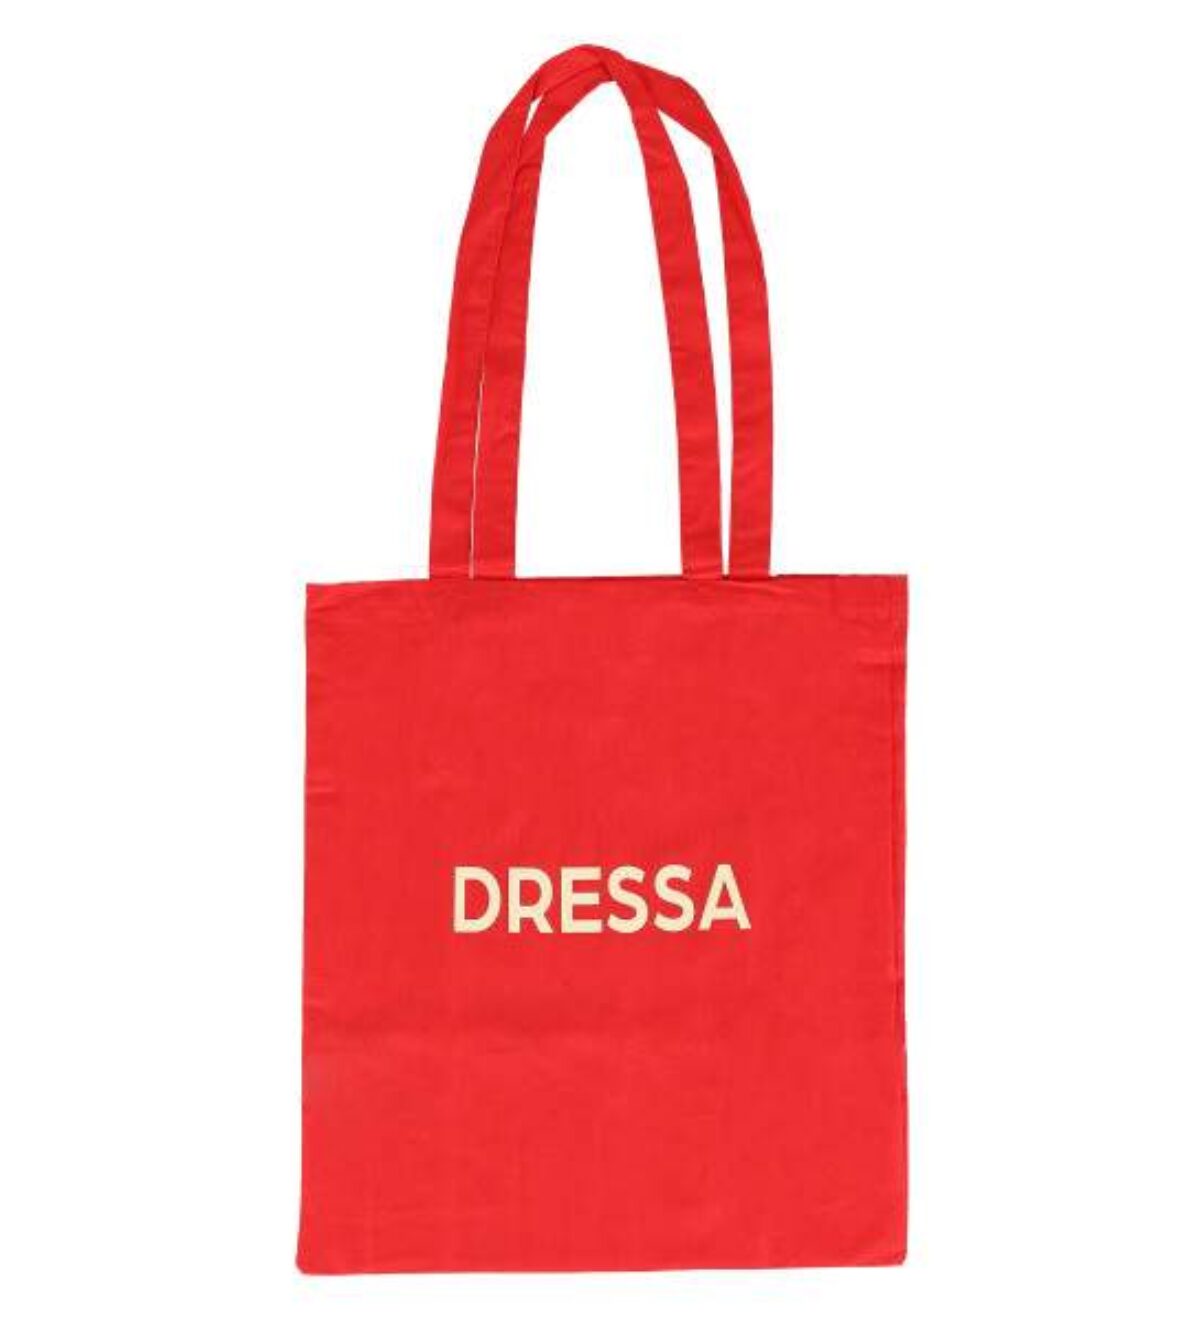 Dressa Shopping Bag pamutvászon bevásárló táska - piros_d191660_Mirunska.com